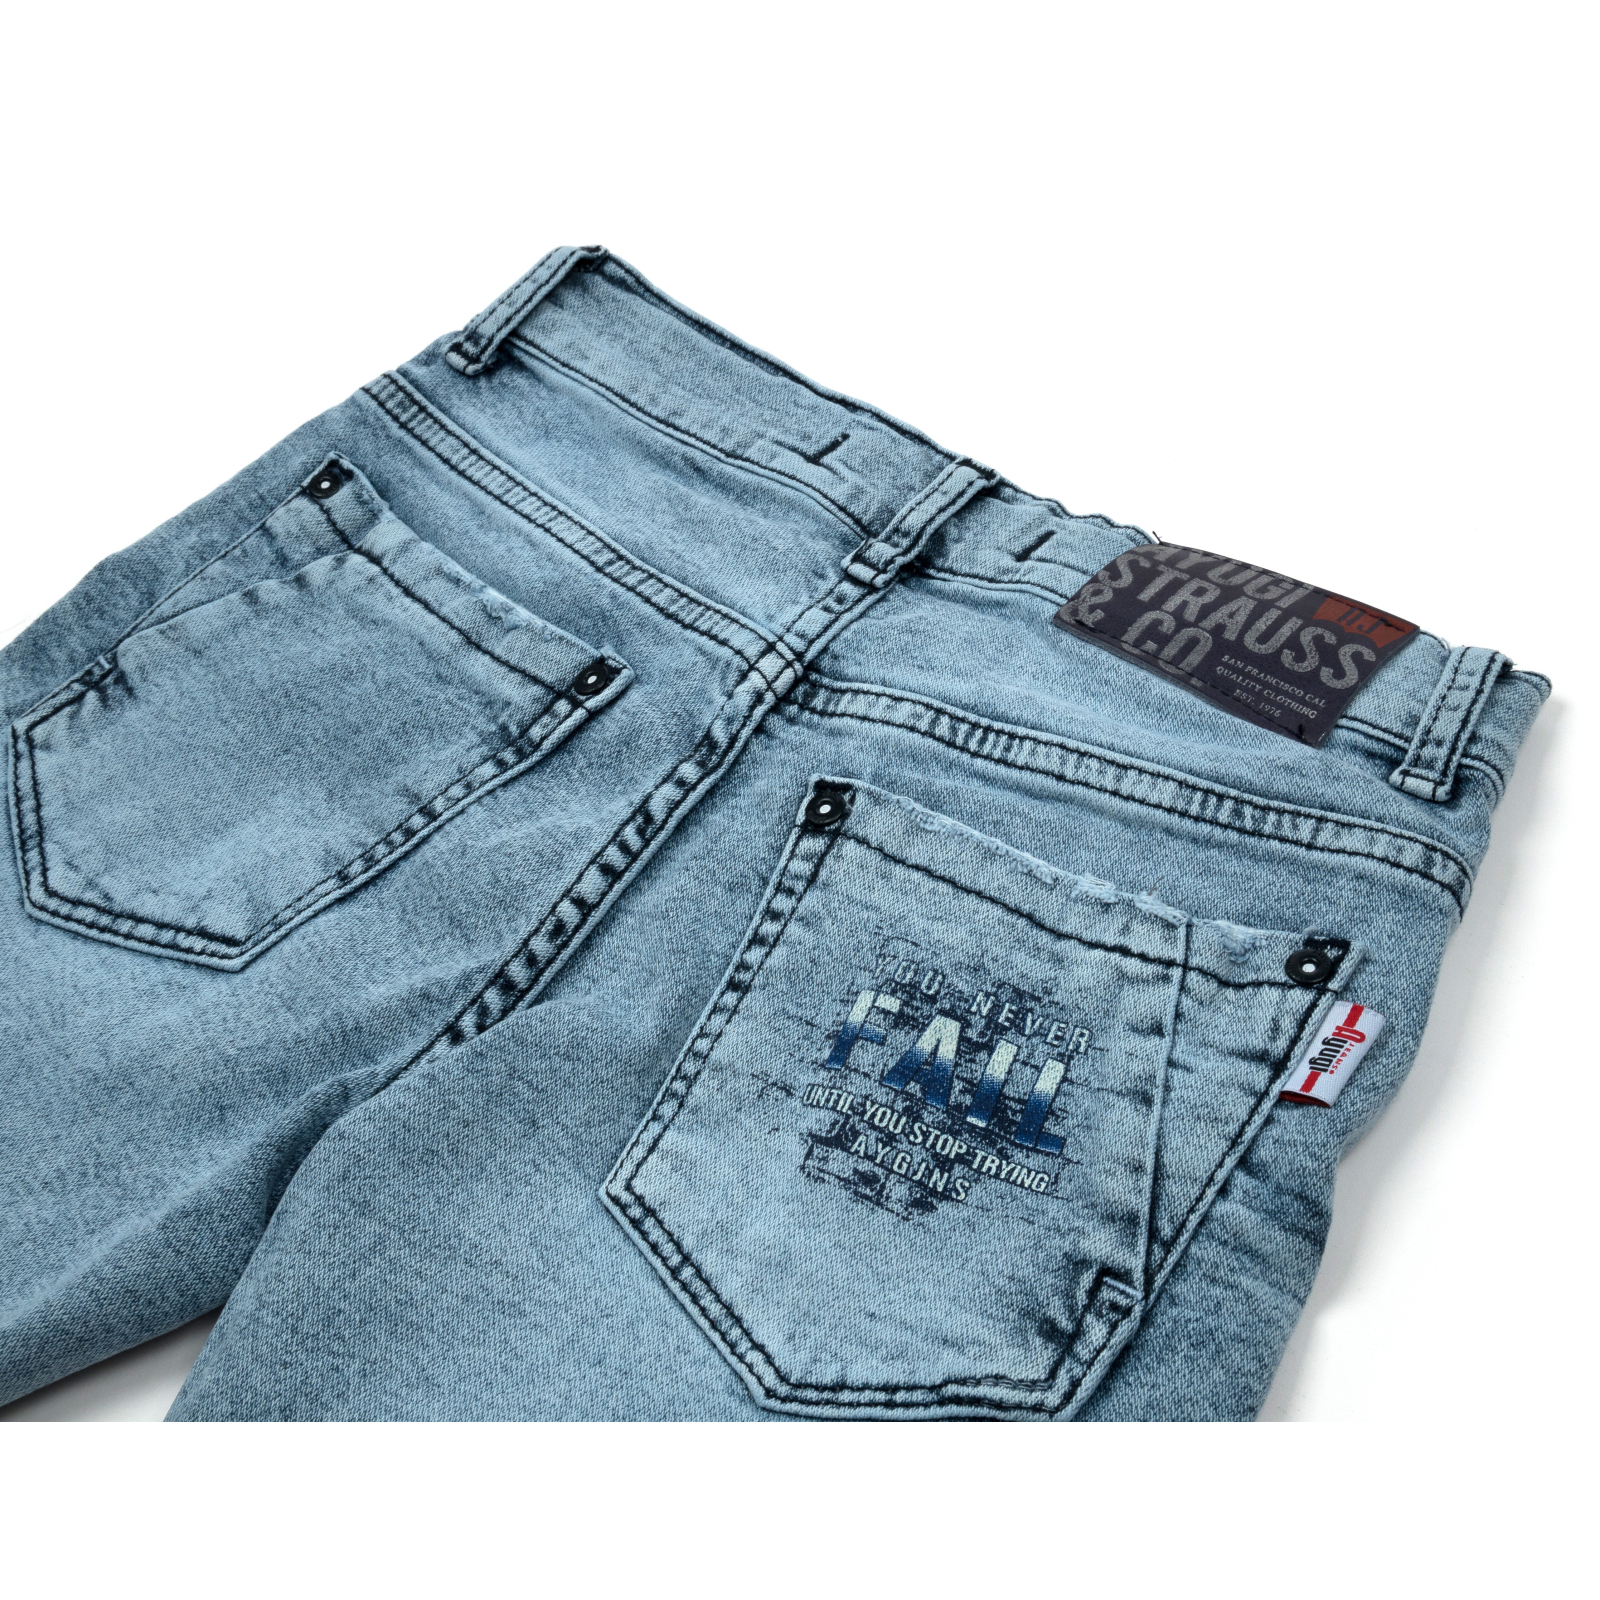 Шорты A-Yugi джинсовые (5260-152B-blue) изображение 4